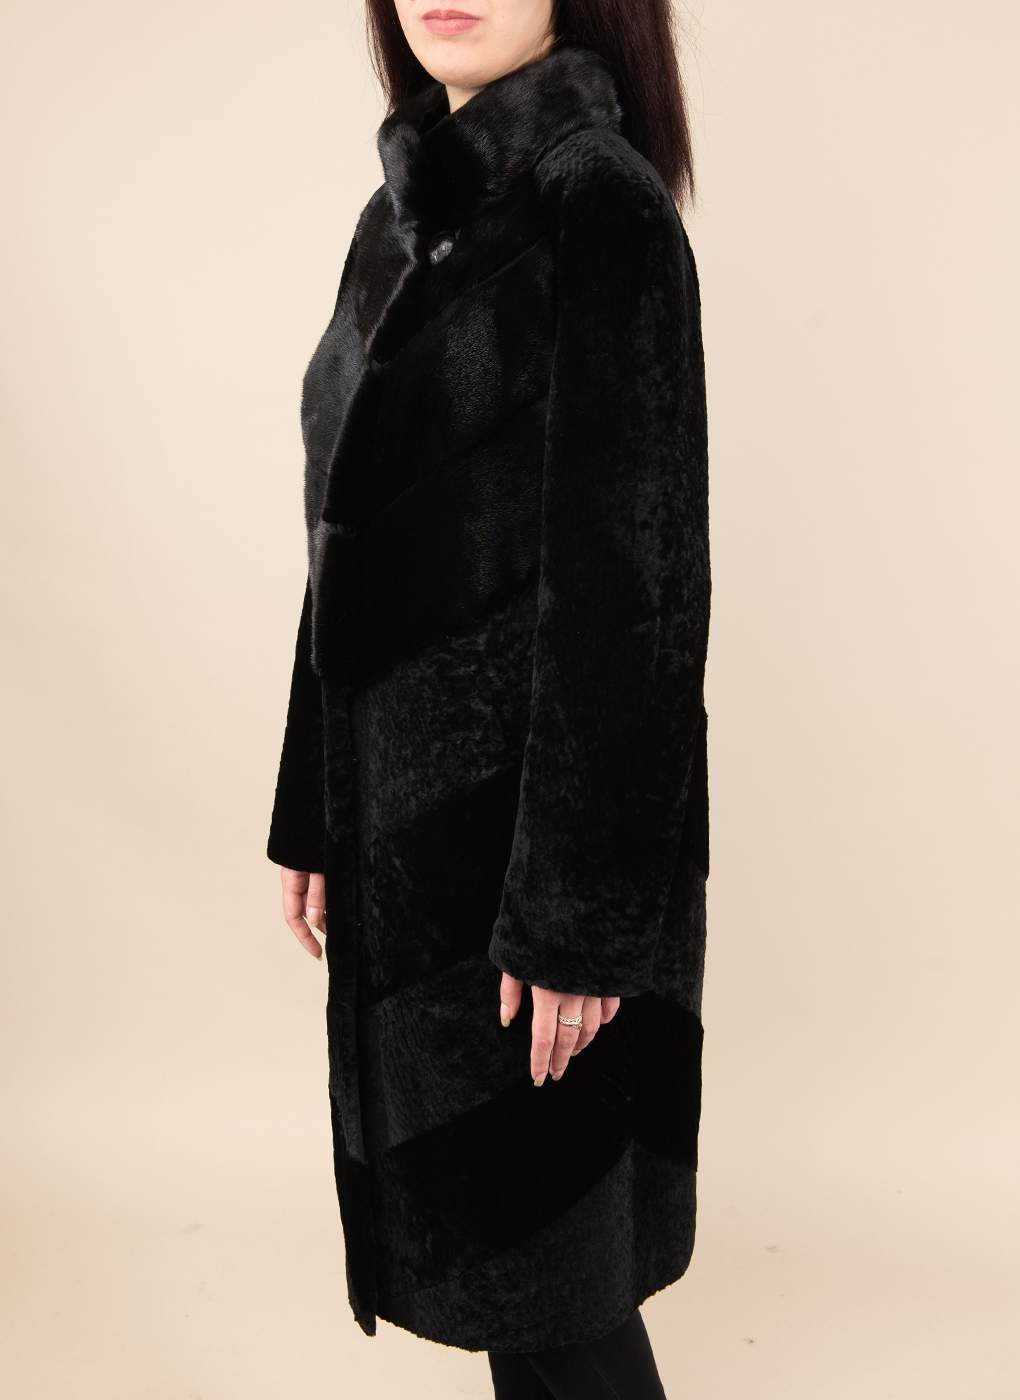 Пальто женское Alfafur 49530 черное 52 RU